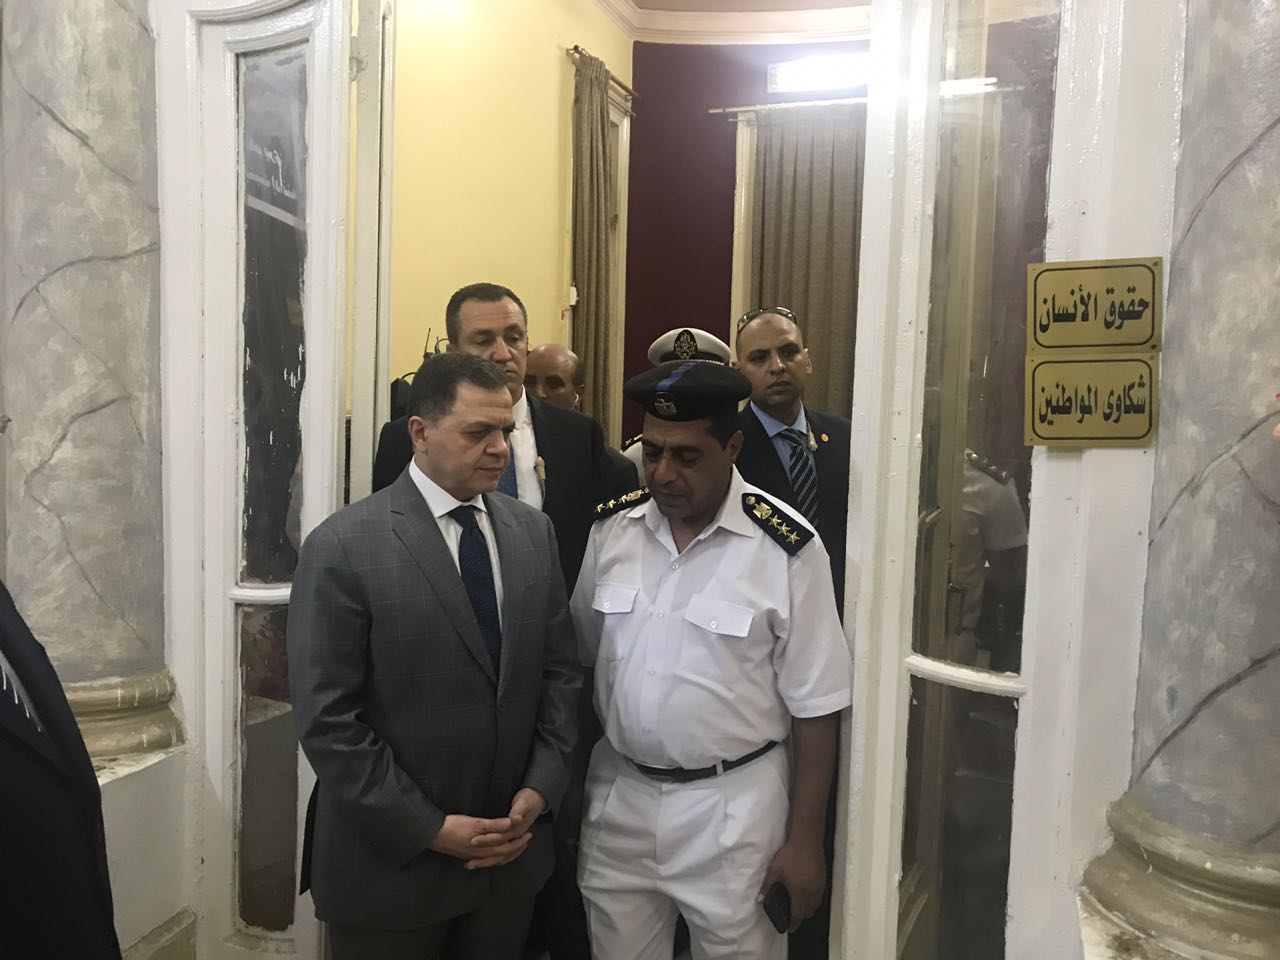 اللواء محمود توفيق يتفقد قسم قصر النيل